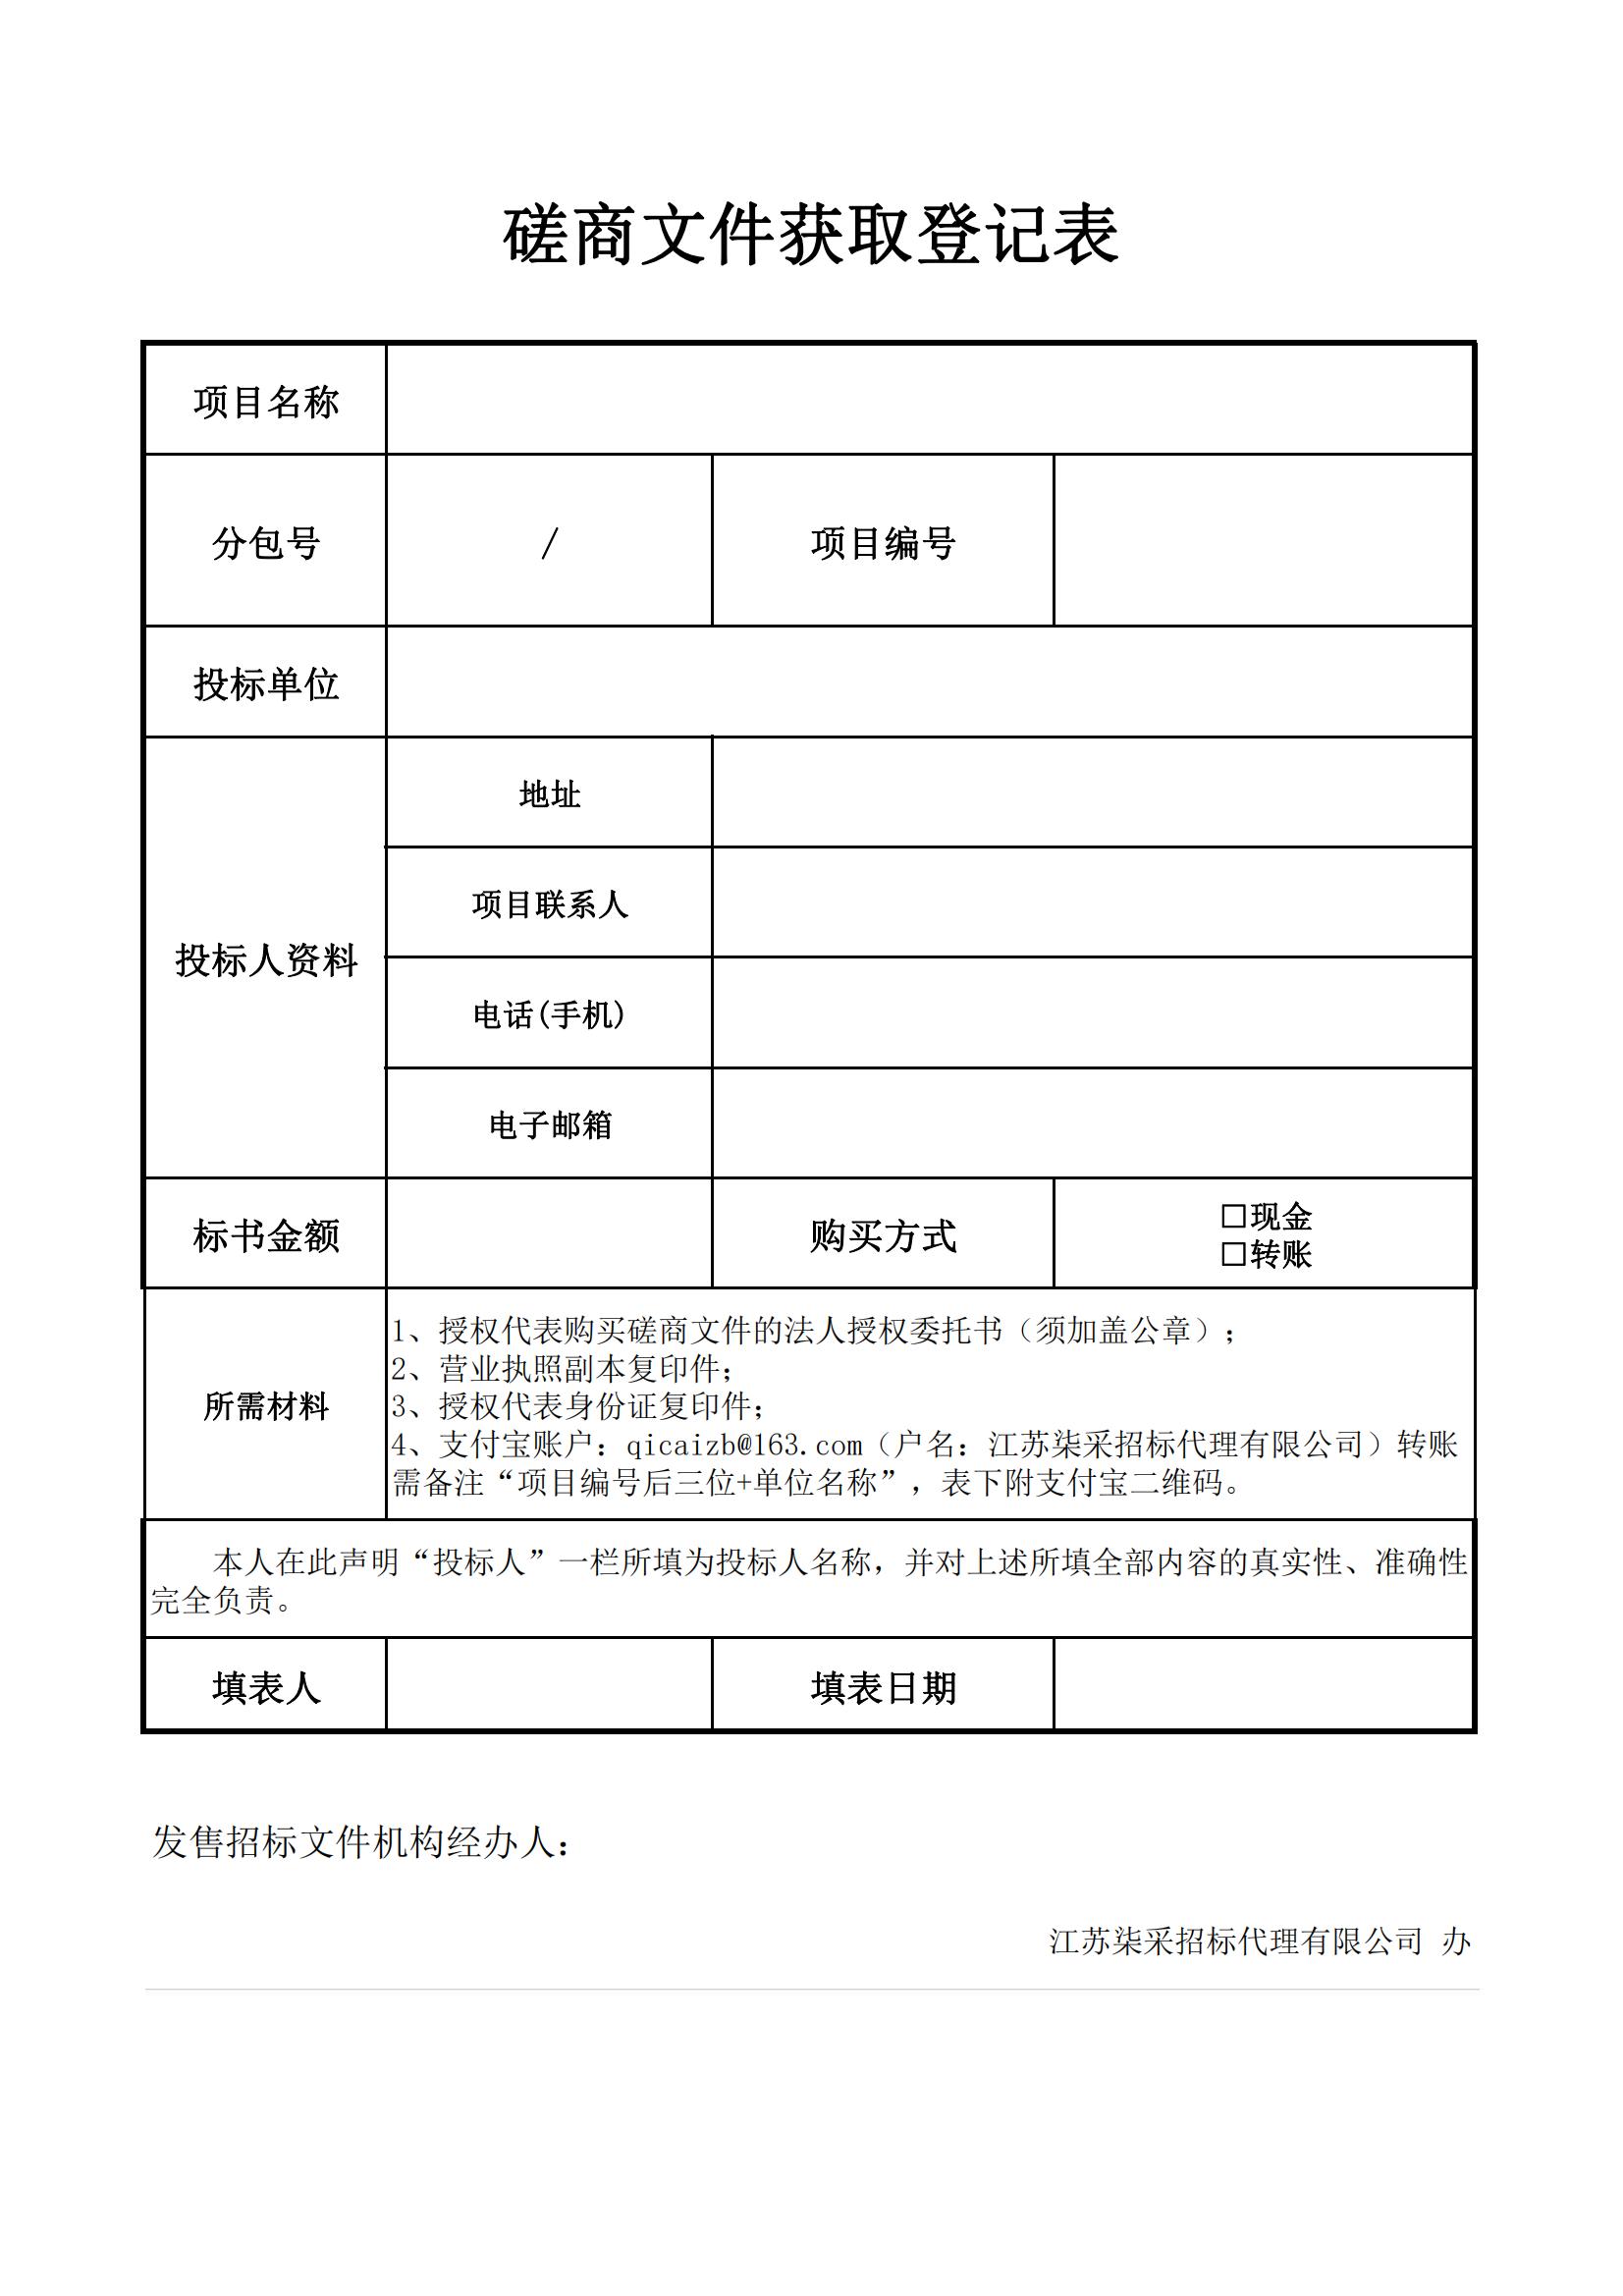 2024年江苏省国画院美术馆展览服务项目的竞争性磋商公告_03.jpg